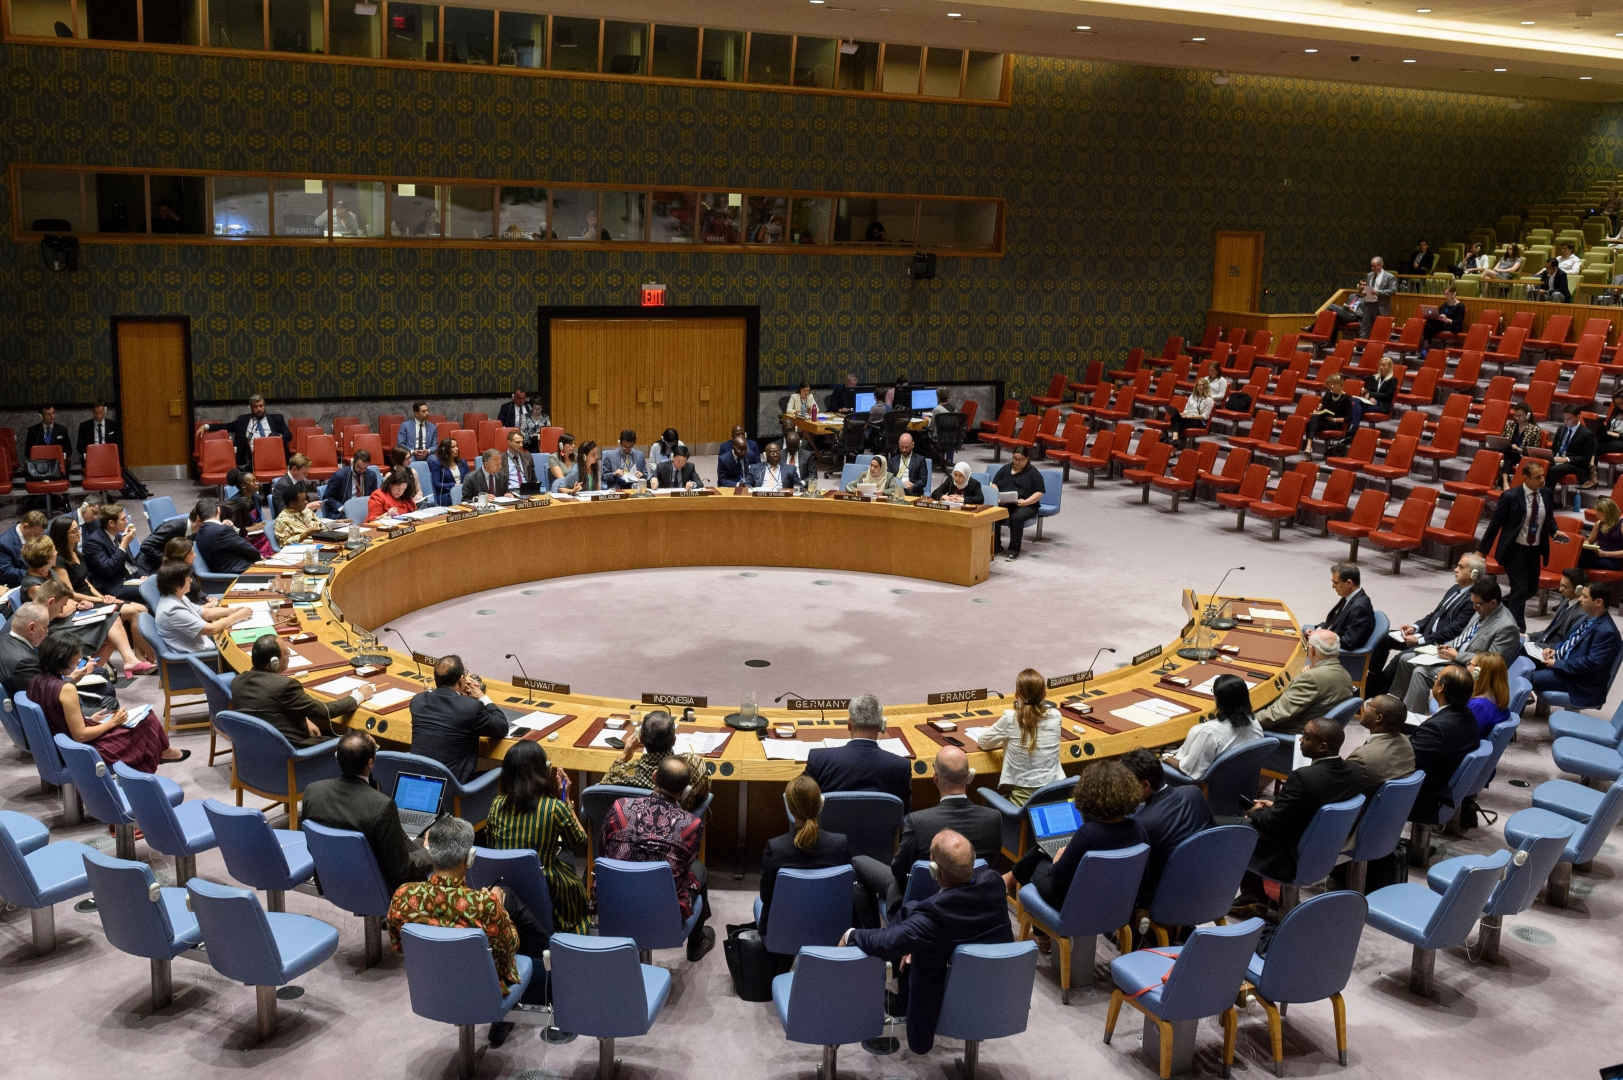 Е оон. Совбез ООН мраморный зал. Заседания Совбеза ООН 1965 -1975. Организация Объединенных наций (ООН). ООН В 4 К.